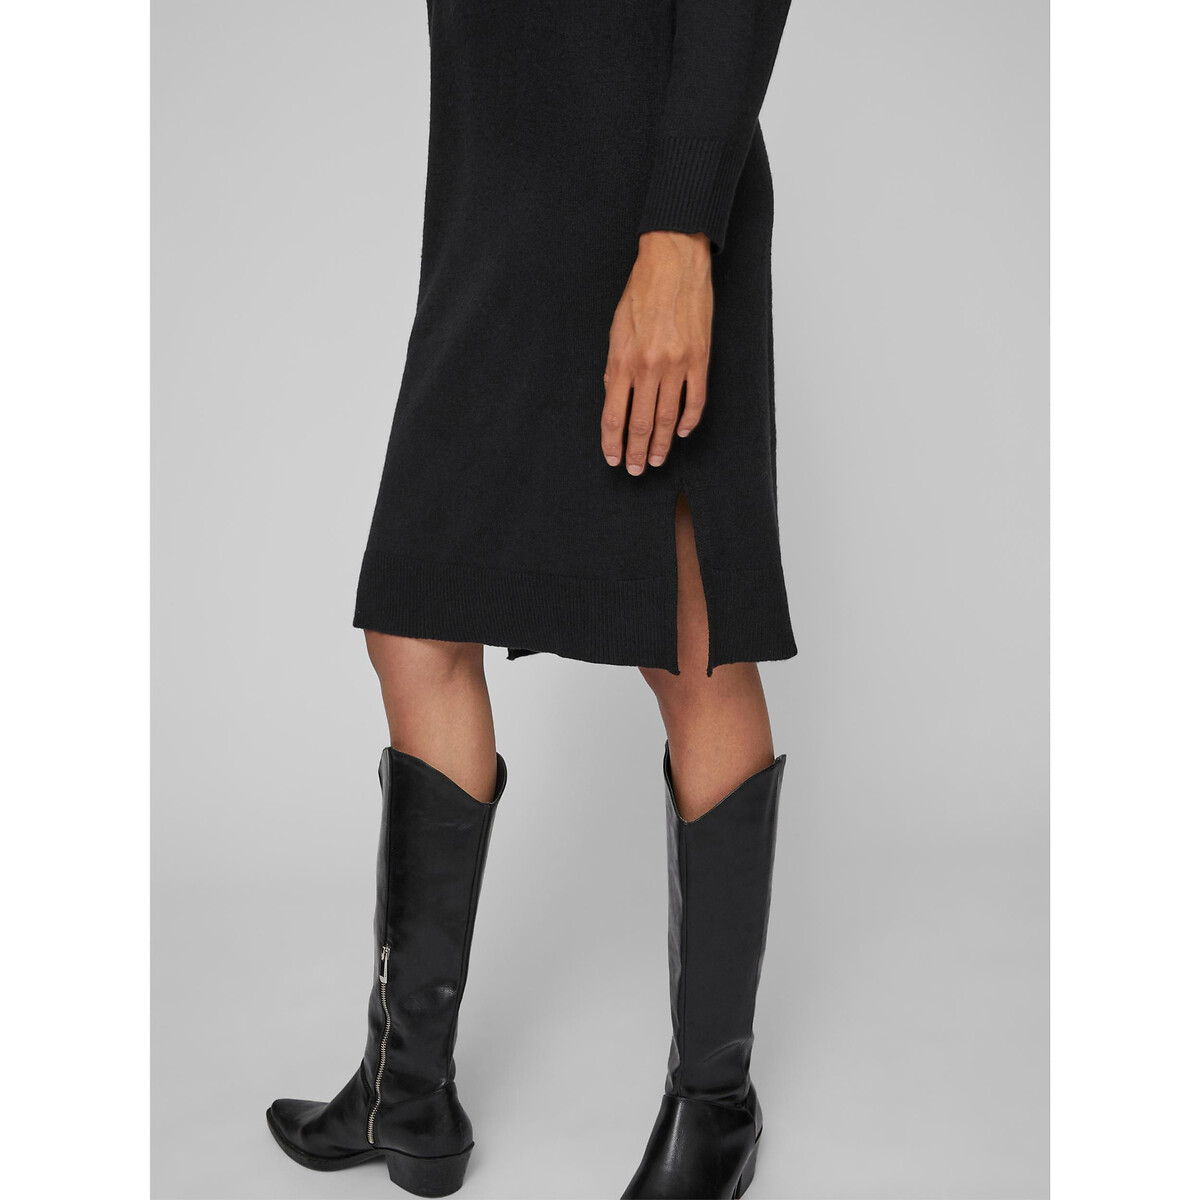 Платье-пуловер VILA Платье-пуловер Миди из тонкого трикотажа воротник-стойка XS черный, размер XS - фото 3